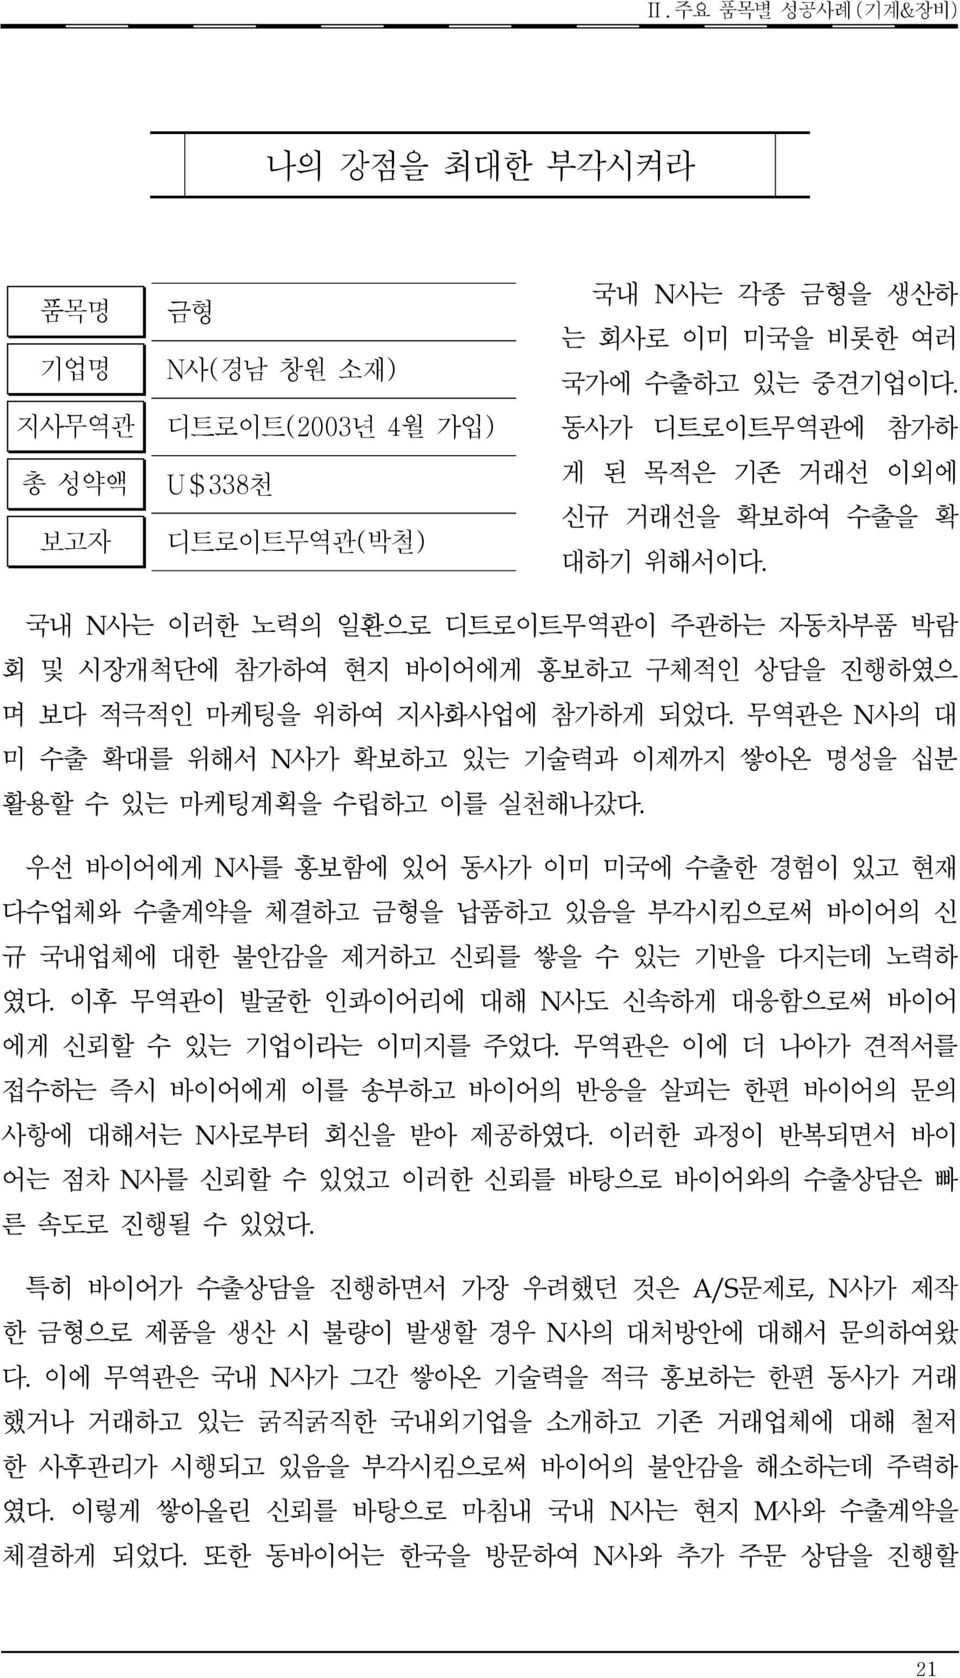 성약액 보고자 품목명 금형 N사(경남 창원 소재)